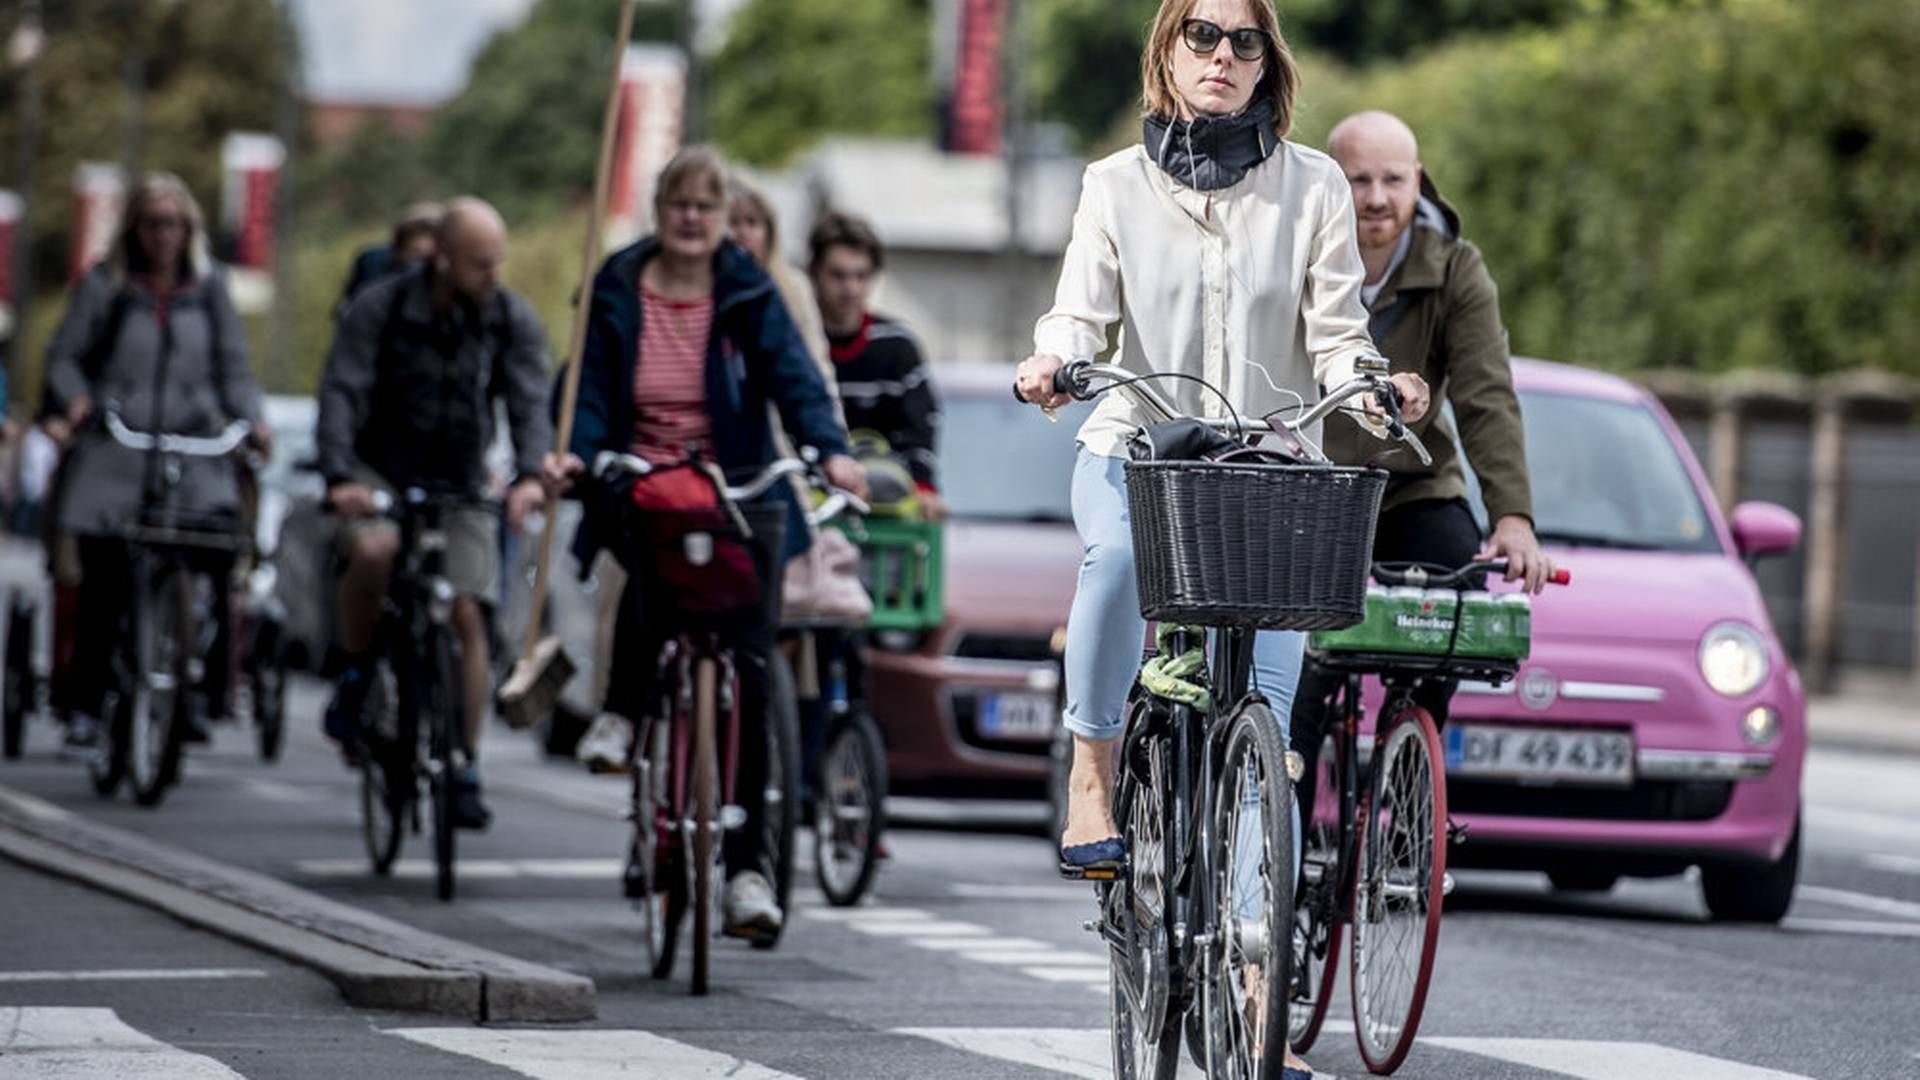 Cykelhjelmen Hövding 3 skal undersøges i Sverige efter kritiske meldinger, der sår tvivl om sikkerheden. | Foto: Celina Dahl/Ritzau Scanpix